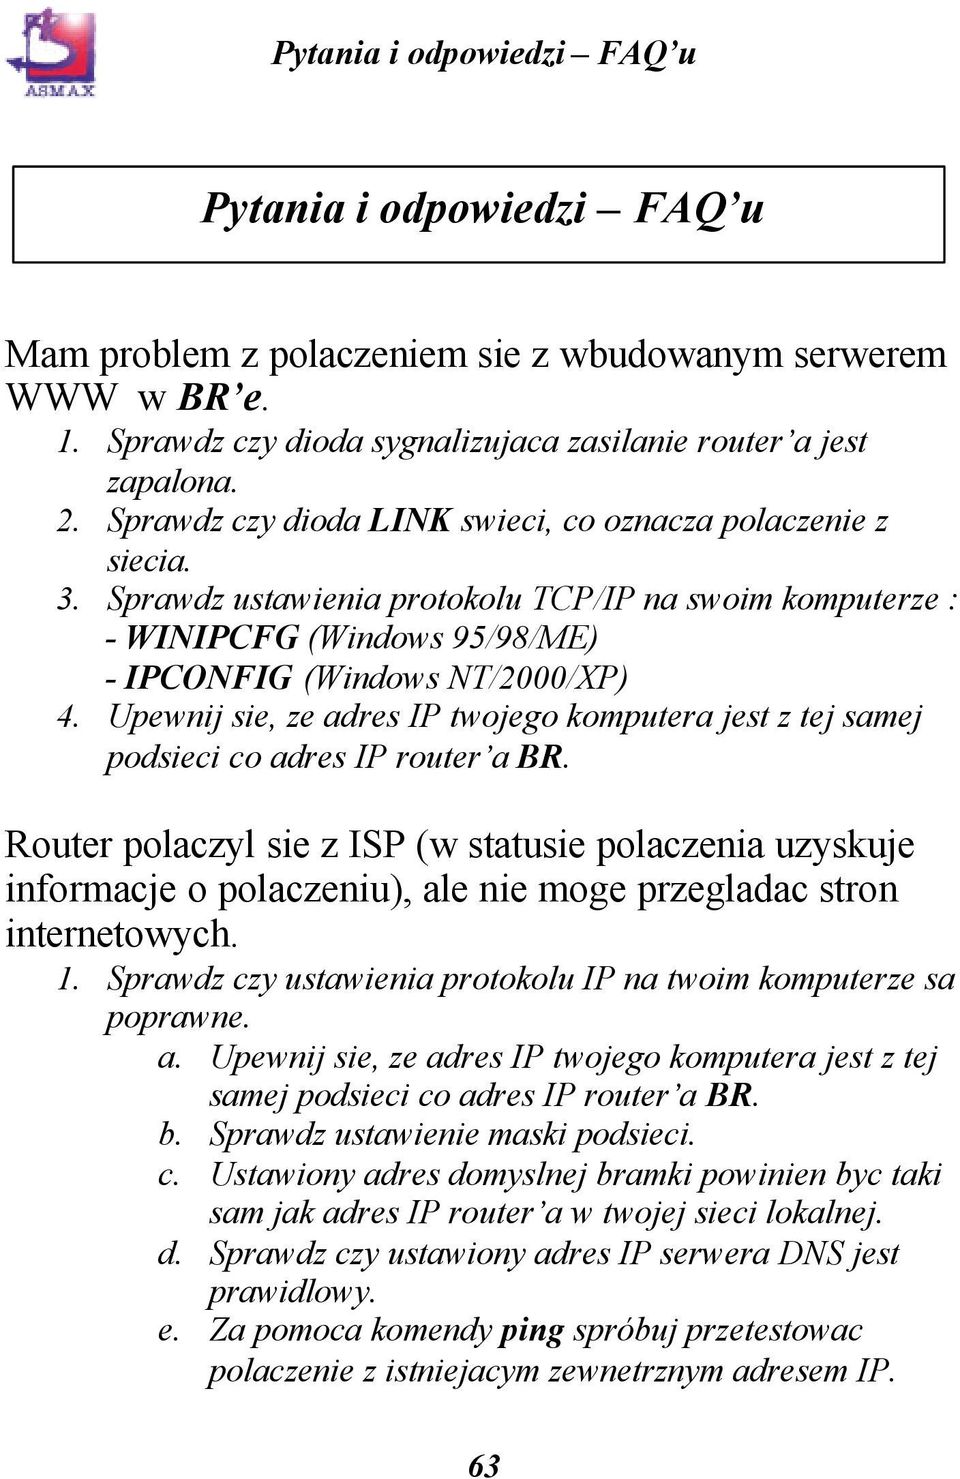 Upewnij sie, ze adres IP twojego komputera jest z tej samej podsieci co adres IP router a BR.